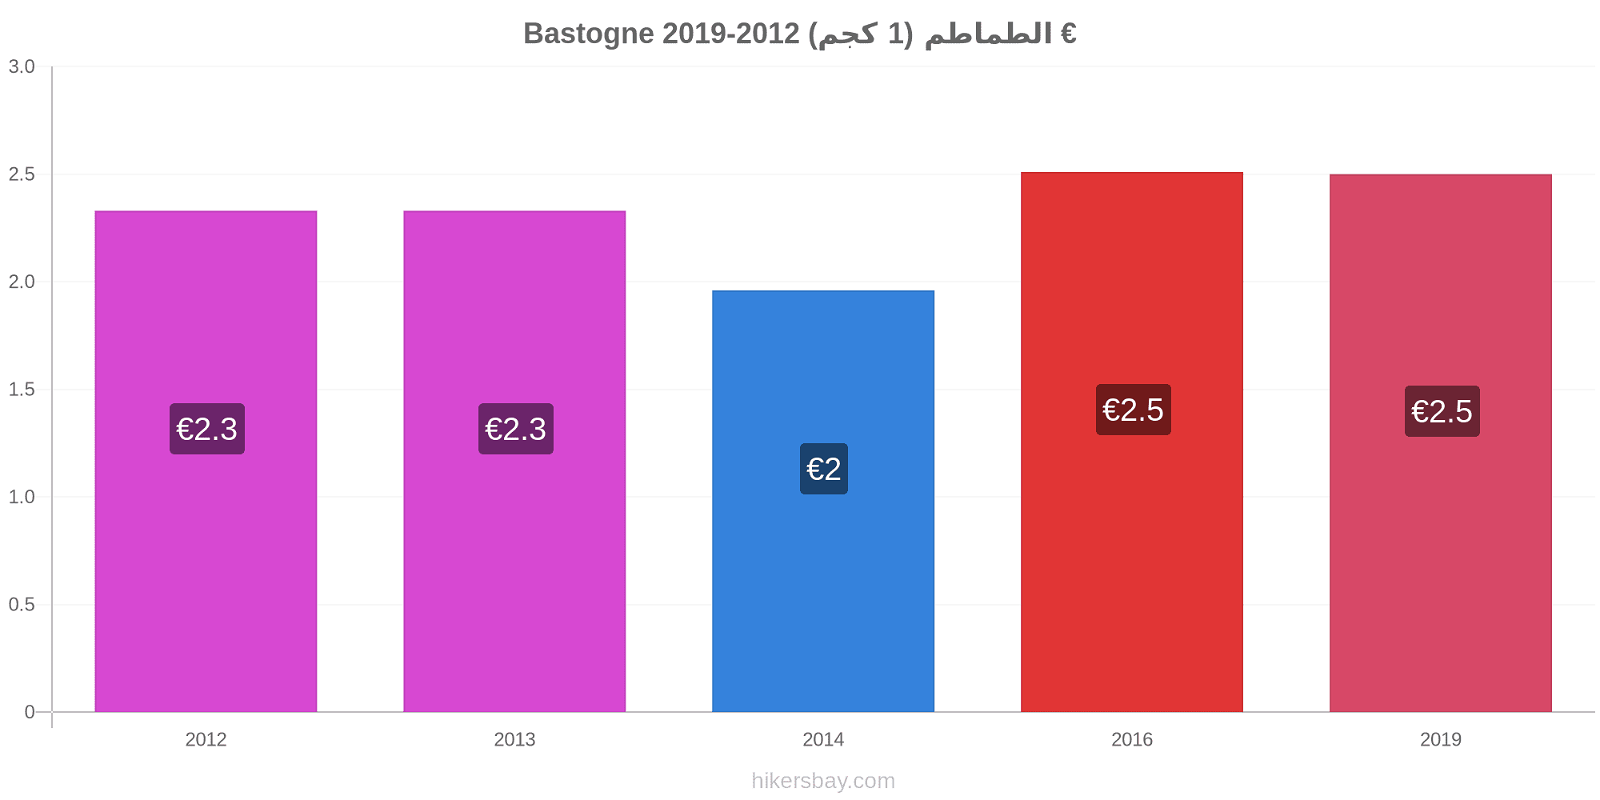 Bastogne تغيرات السعر الطماطم (1 كجم) hikersbay.com